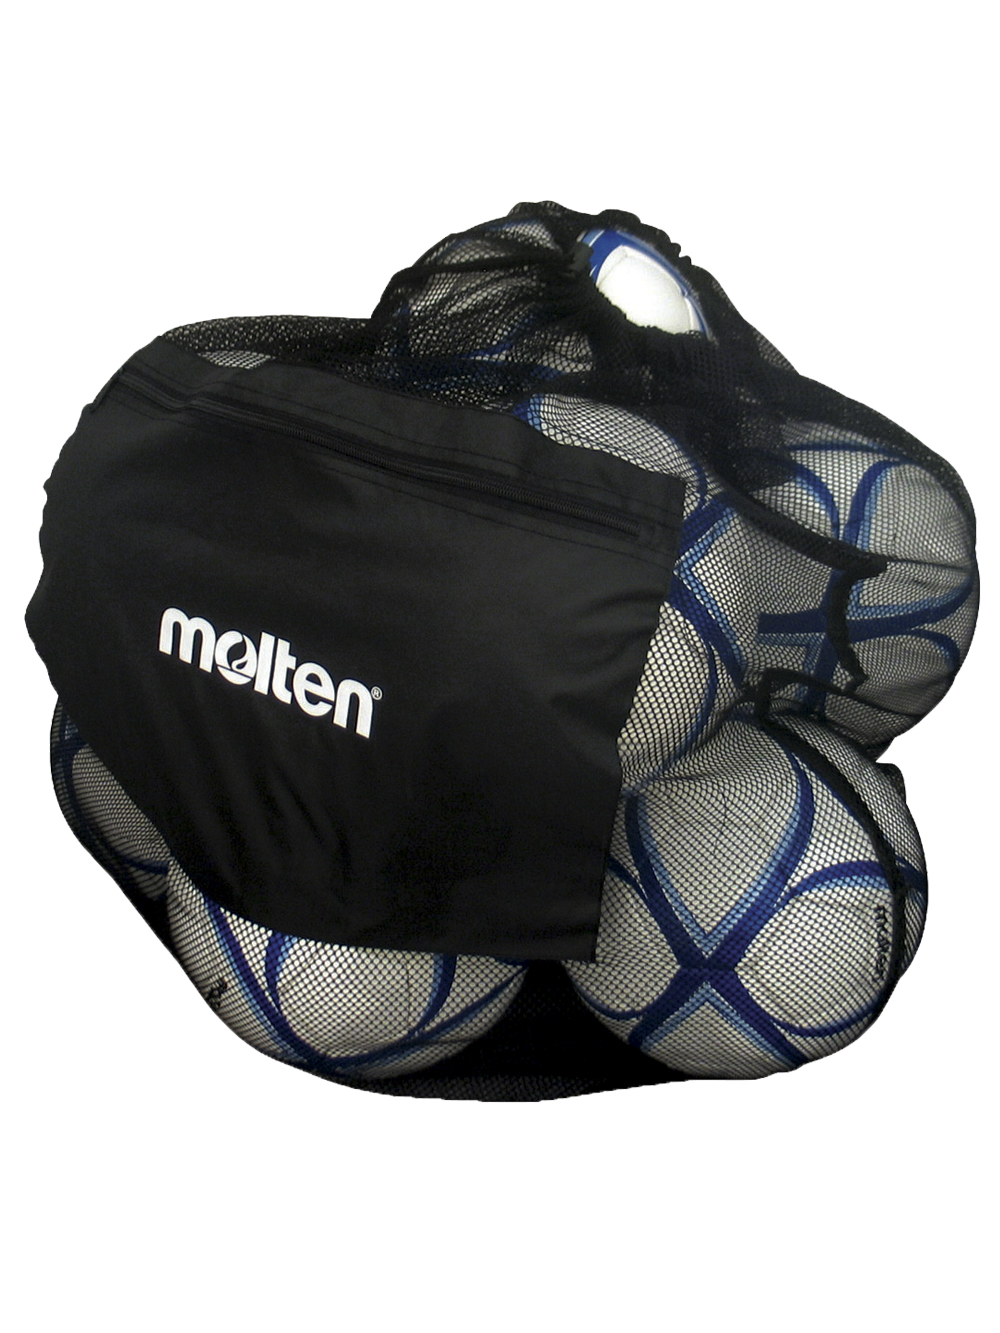 Molten Single Ball Bag